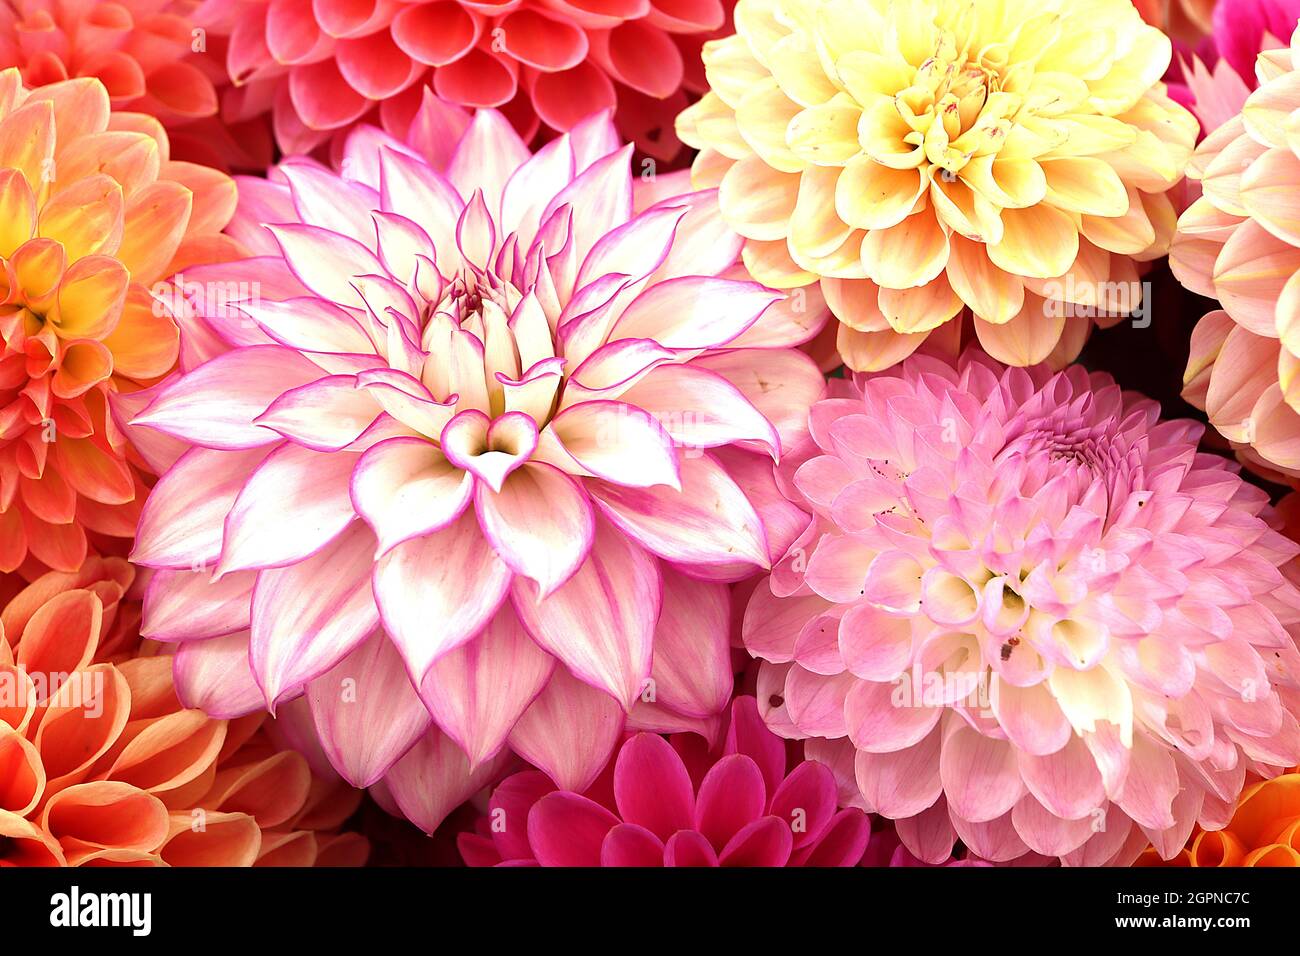 Dahlia ‘Crazy Love’ Decorative Dahlia Group 5 Weiße Blüten mit violettem Flush und umrissenen, purpurfarbenen Rändern, September, England, Großbritannien Stockfoto